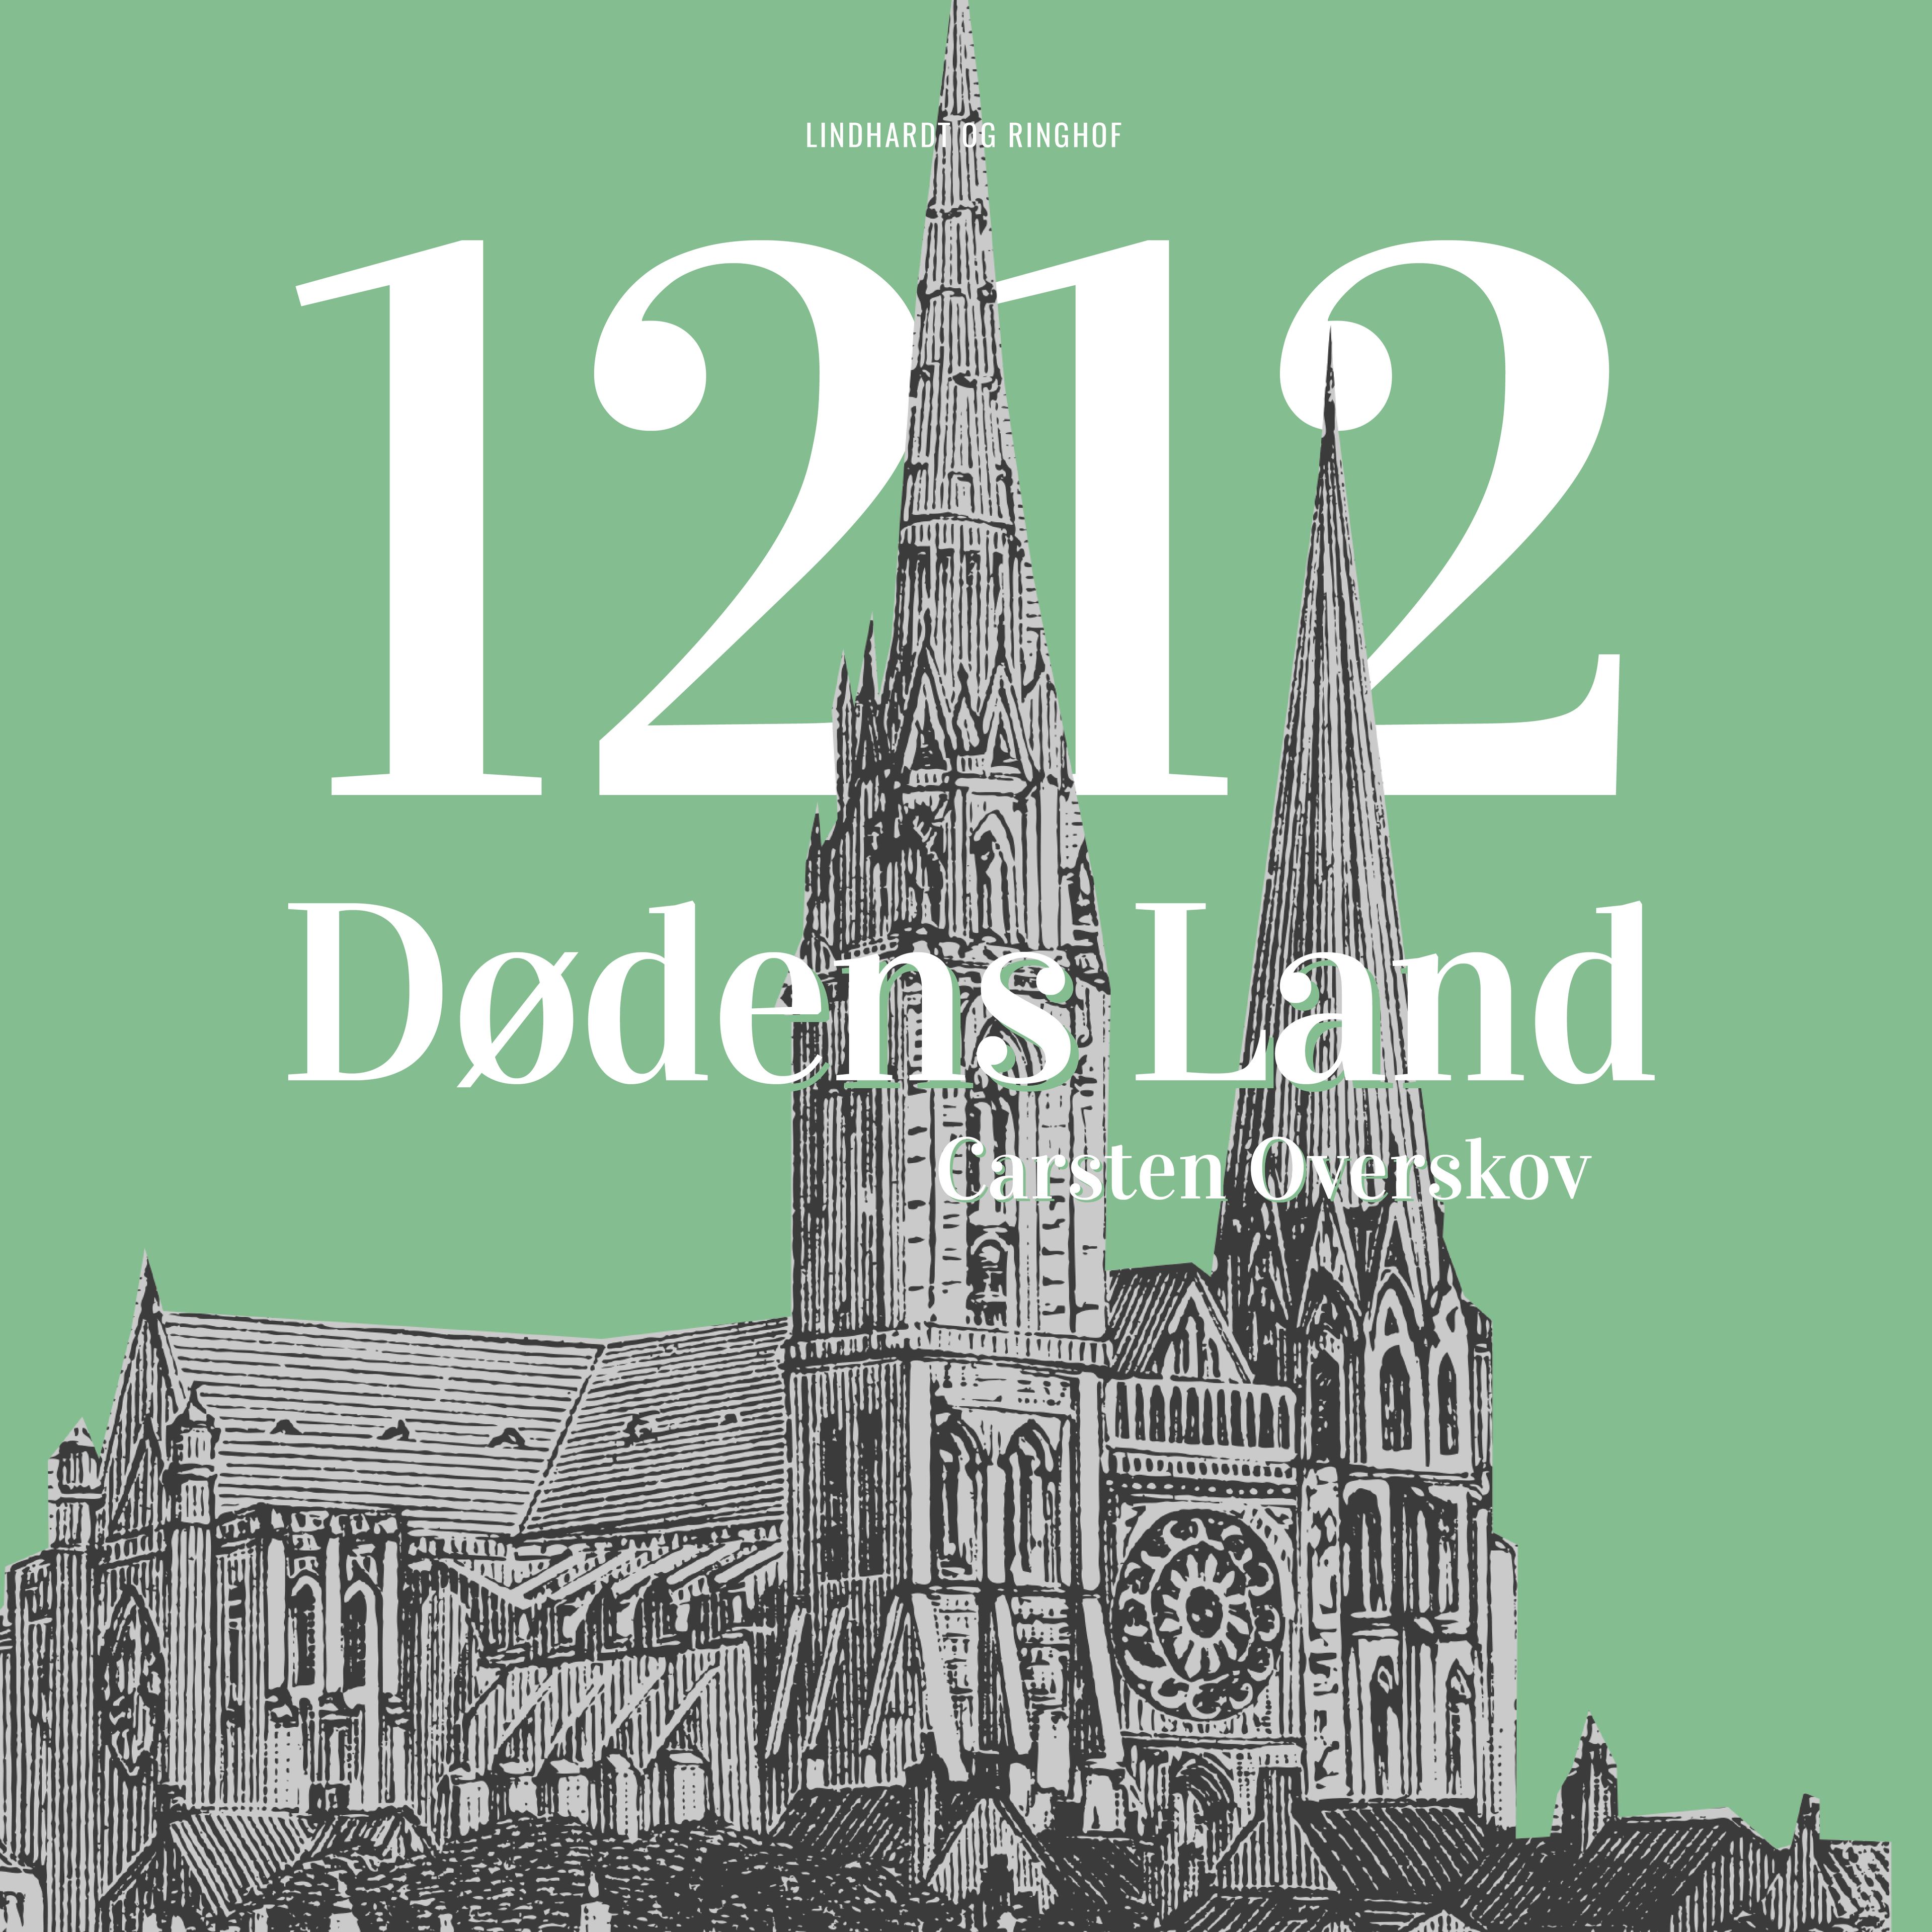 1212 Dødens land, ljudbok av Carsten Overskov